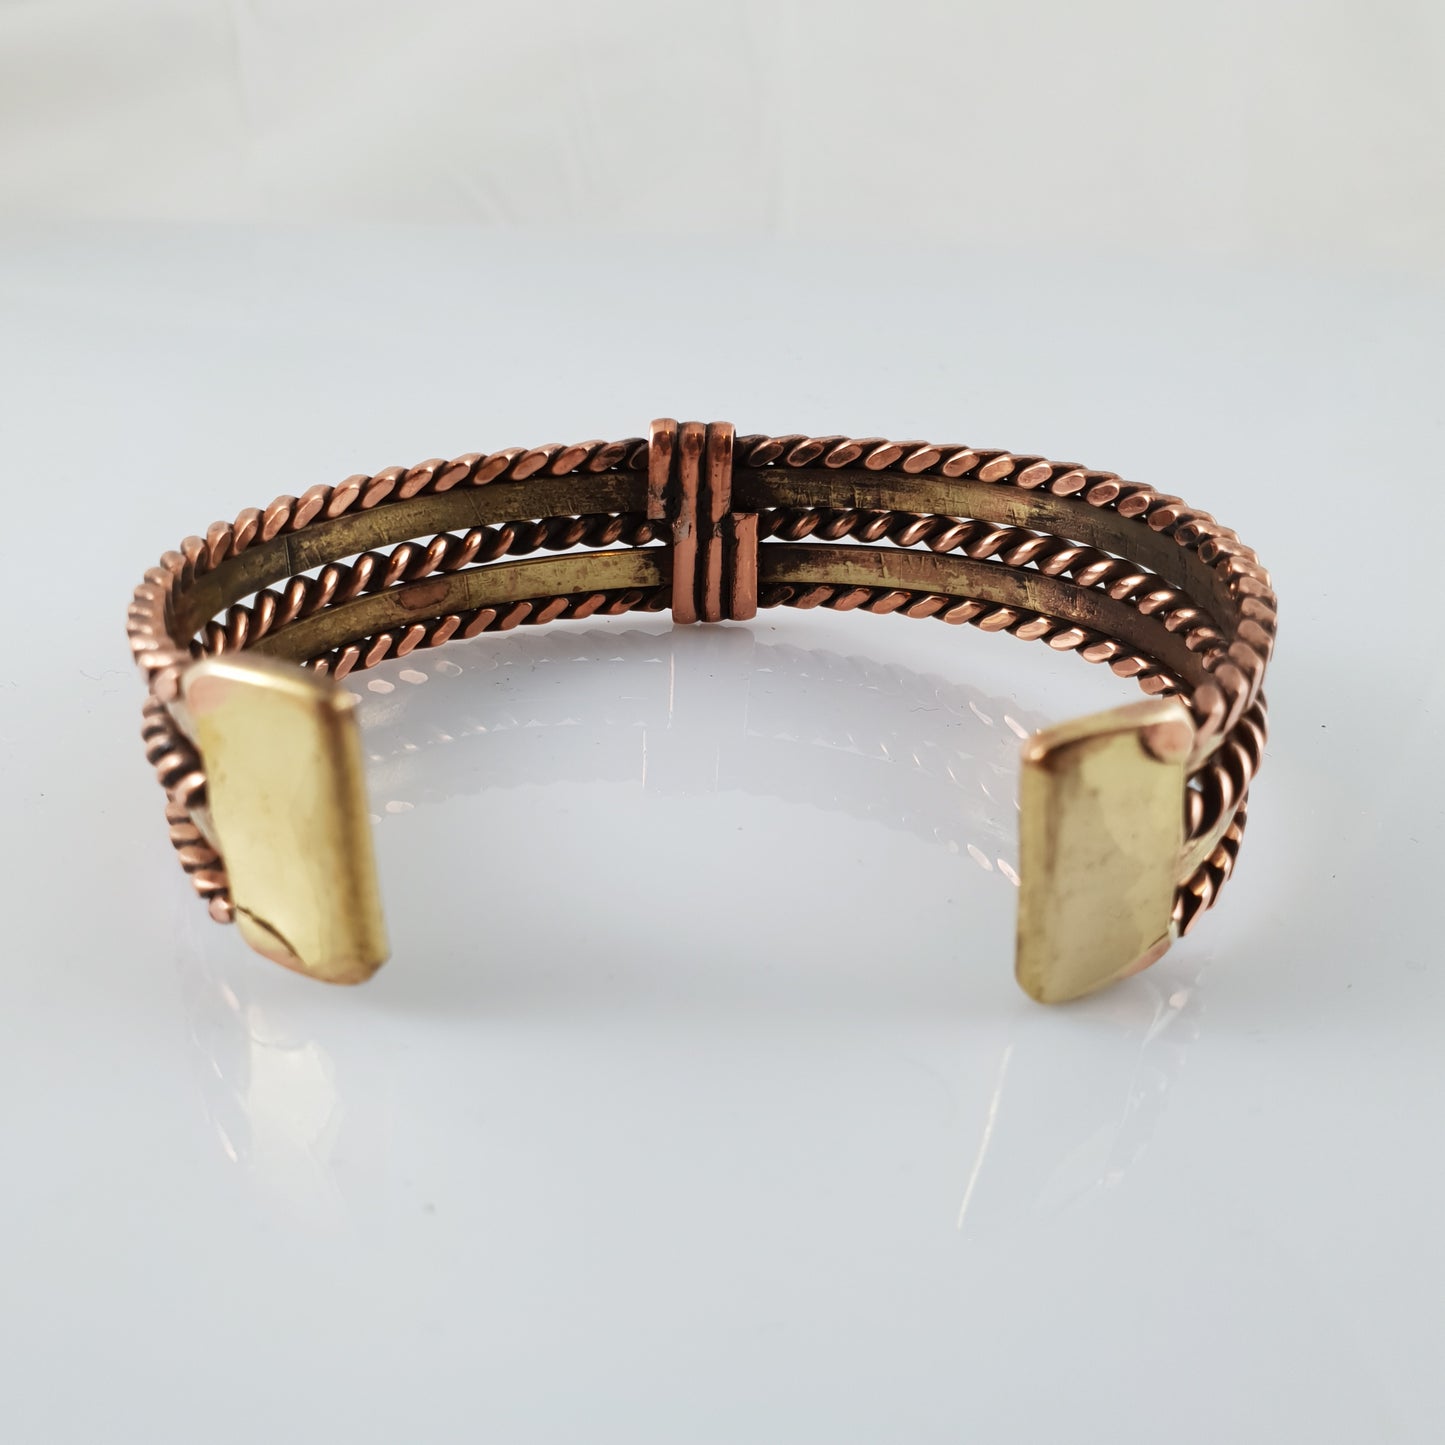 Designer NZ Handmade Copper Bracelet - Rivendell Shop